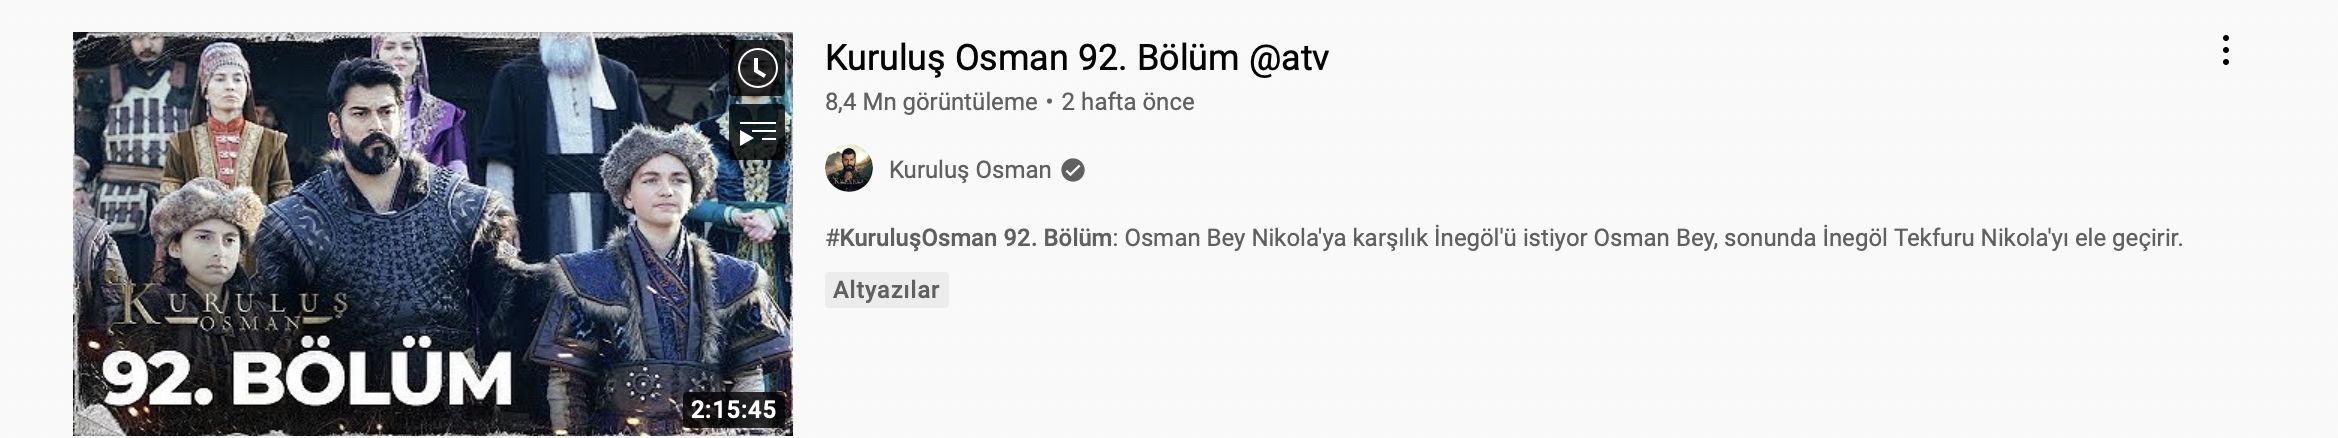 Kuruluş Osman’dan müthiş bir rekor! 89